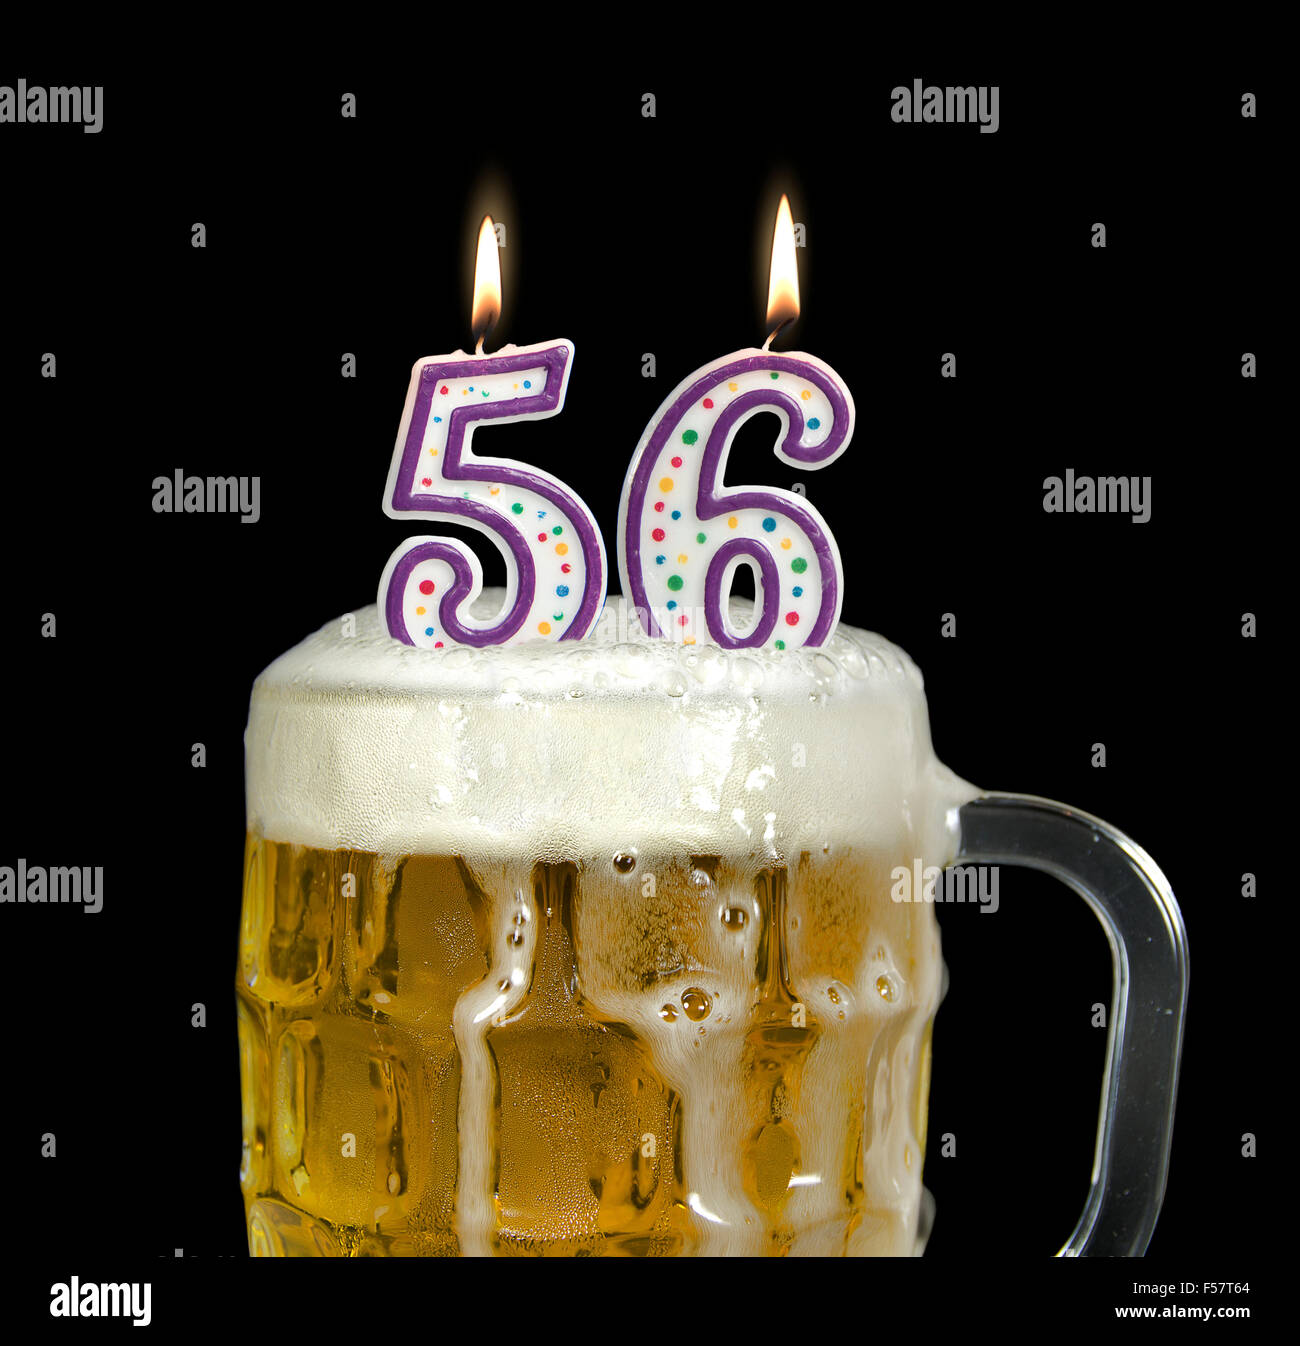 Geburtstagskerzen in Krug Bier zum 56. Geburtstag auf schwarz. Stockfoto